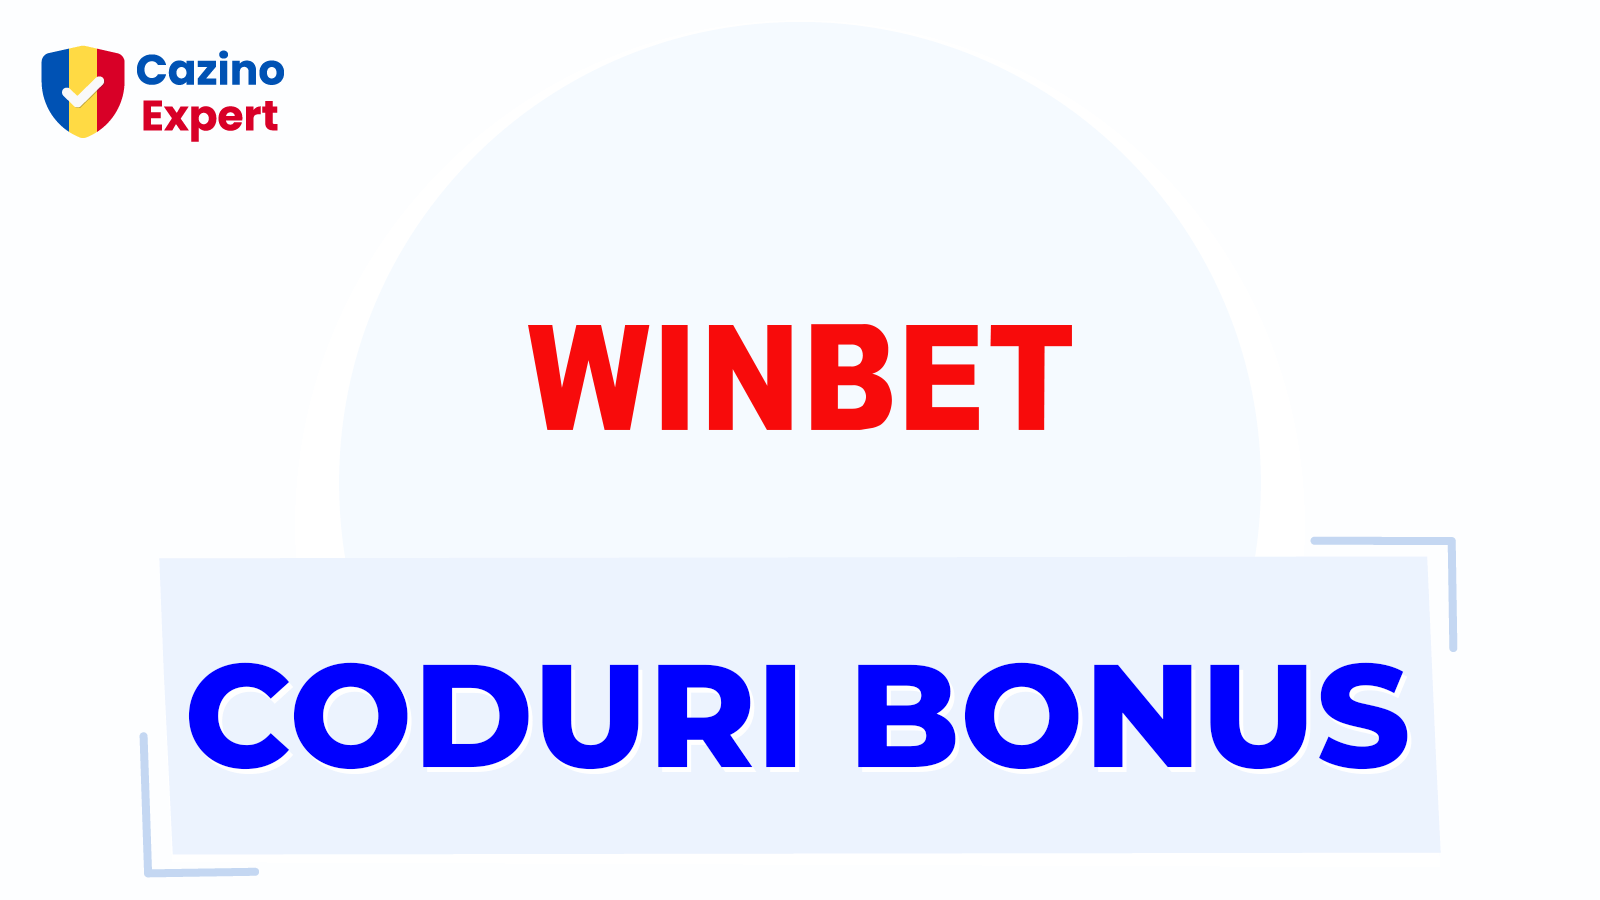 Winbet Coduri Bonus